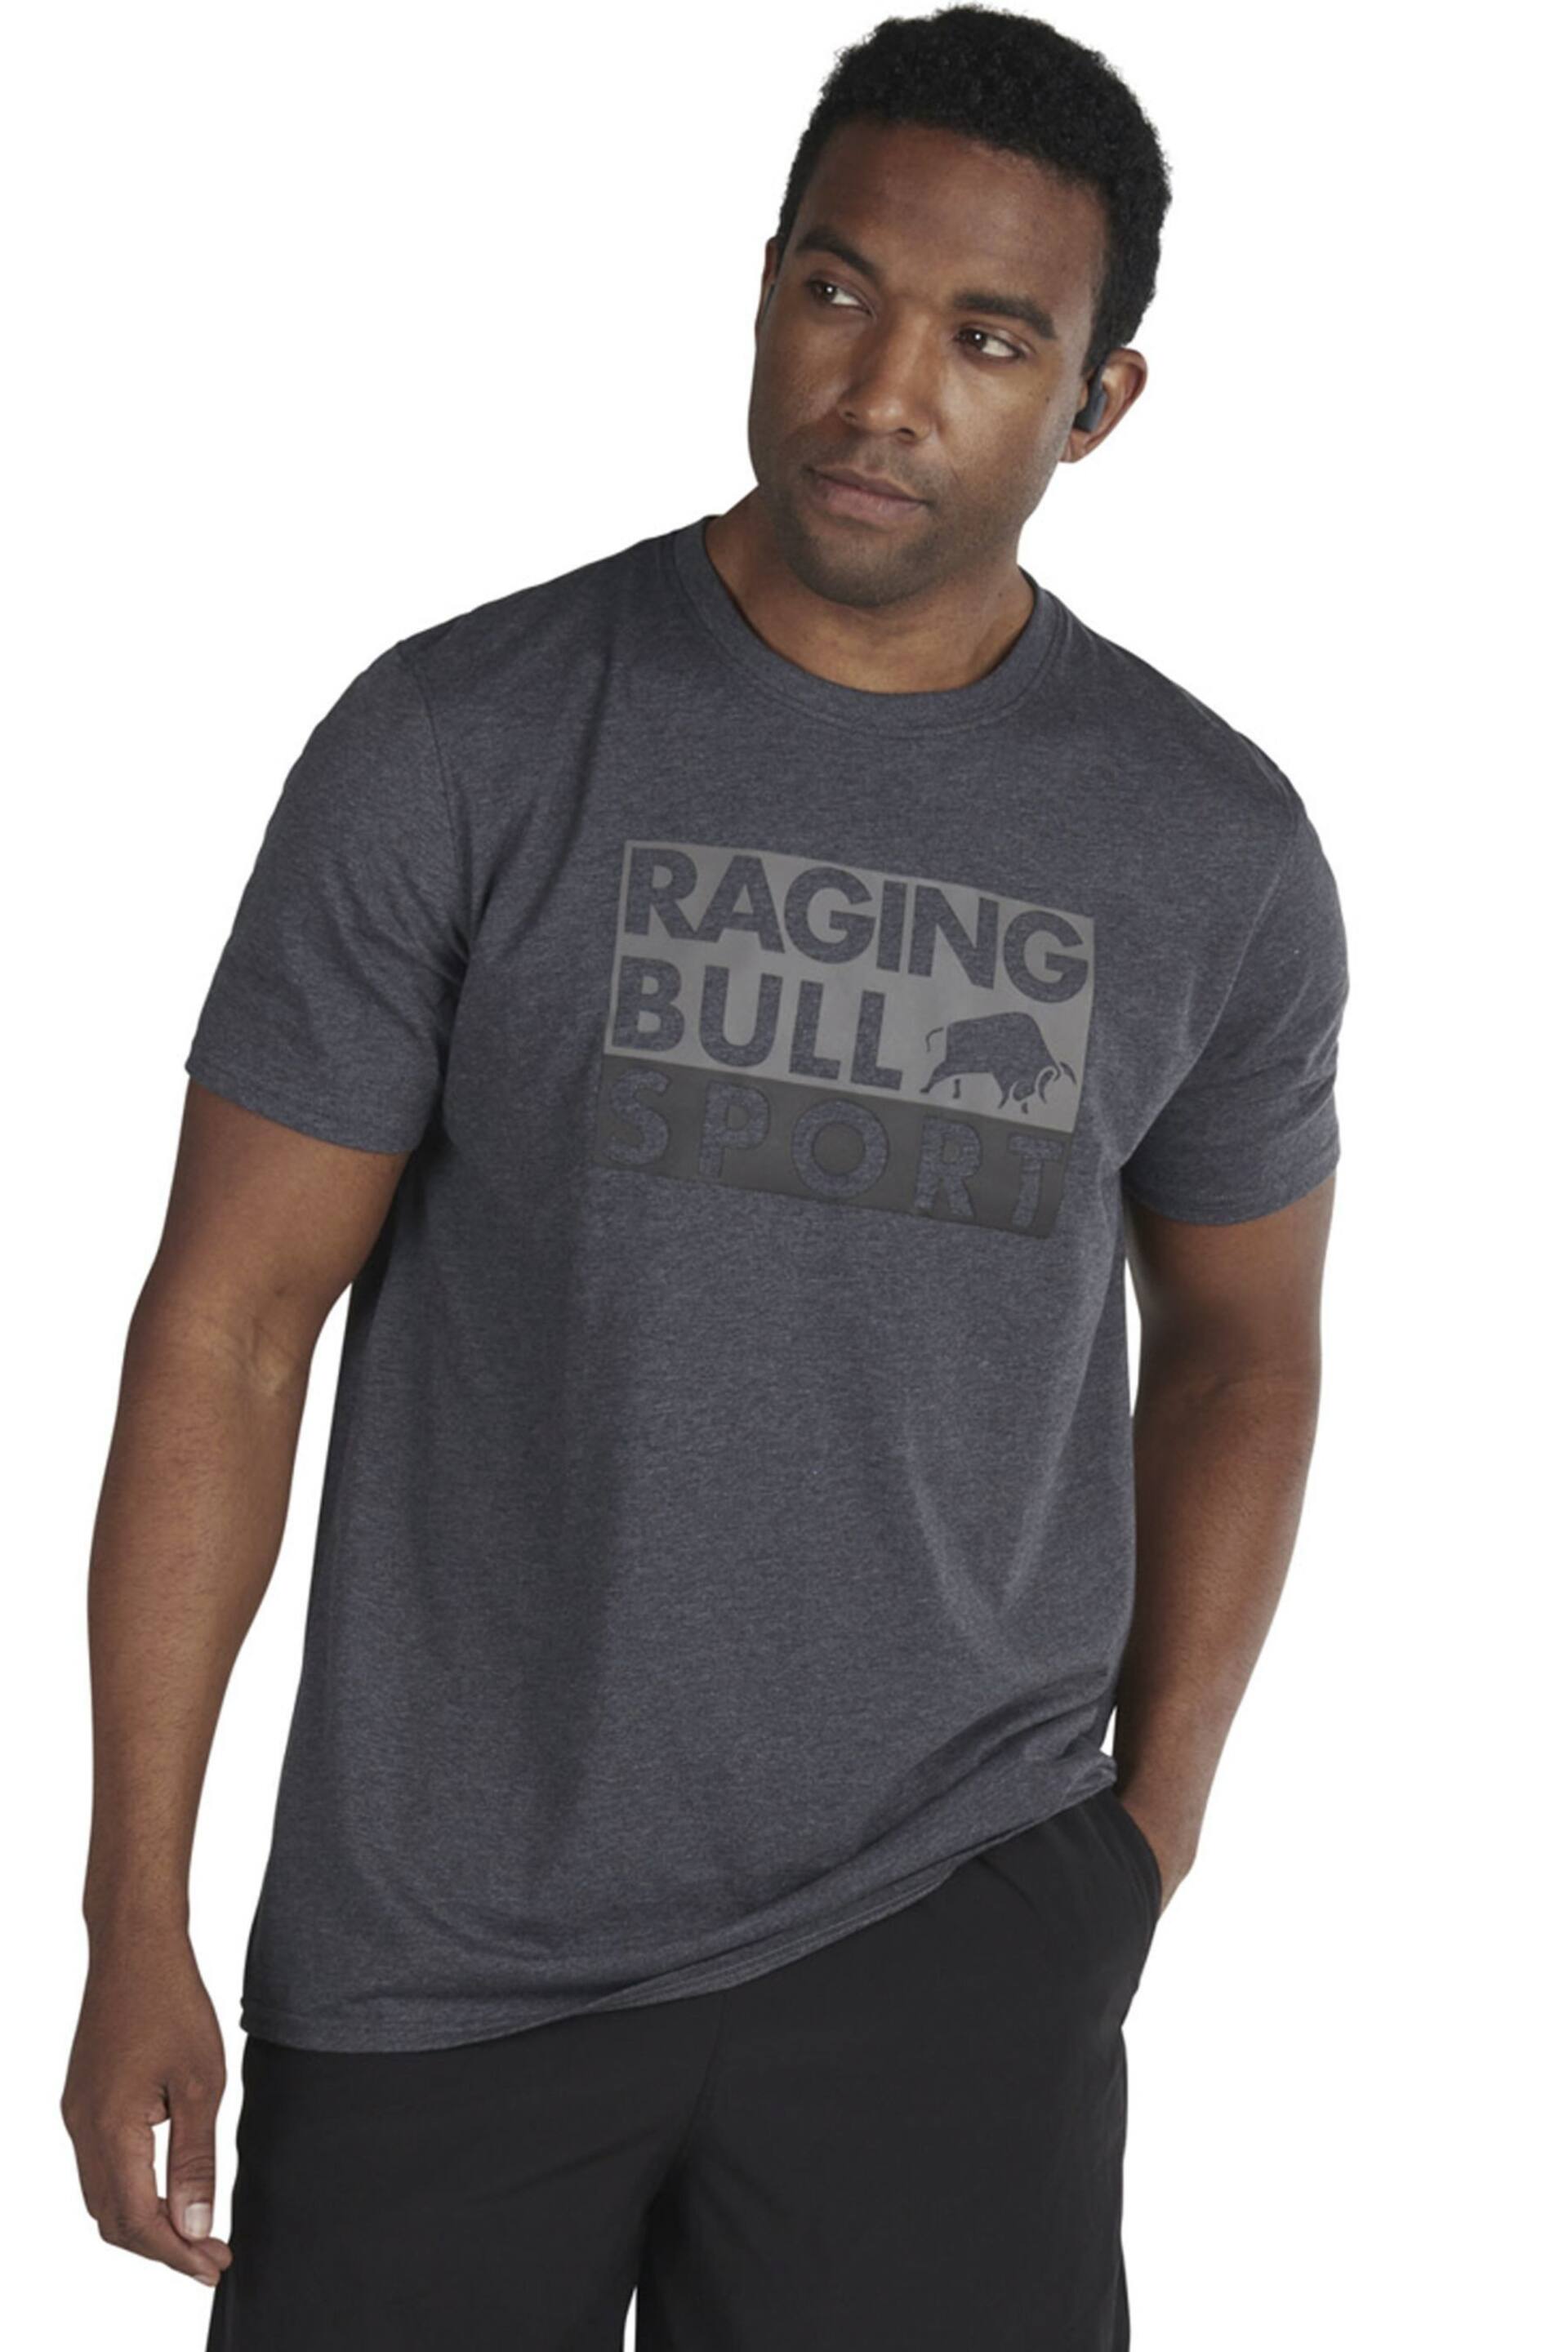 Raging Bull Grey Sport Block T-Shirt - Image 1 of 4